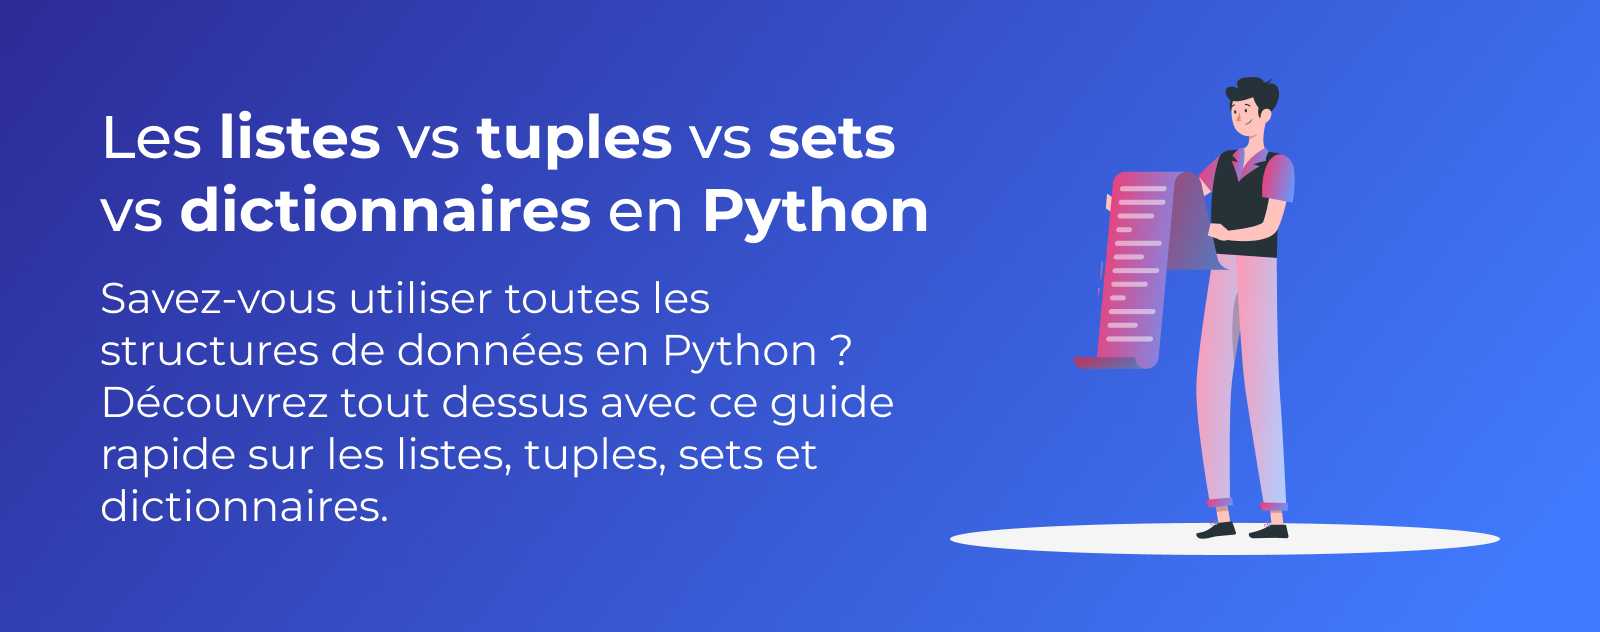 Les listes vs tuples vs sets vs dictionnaires en Python